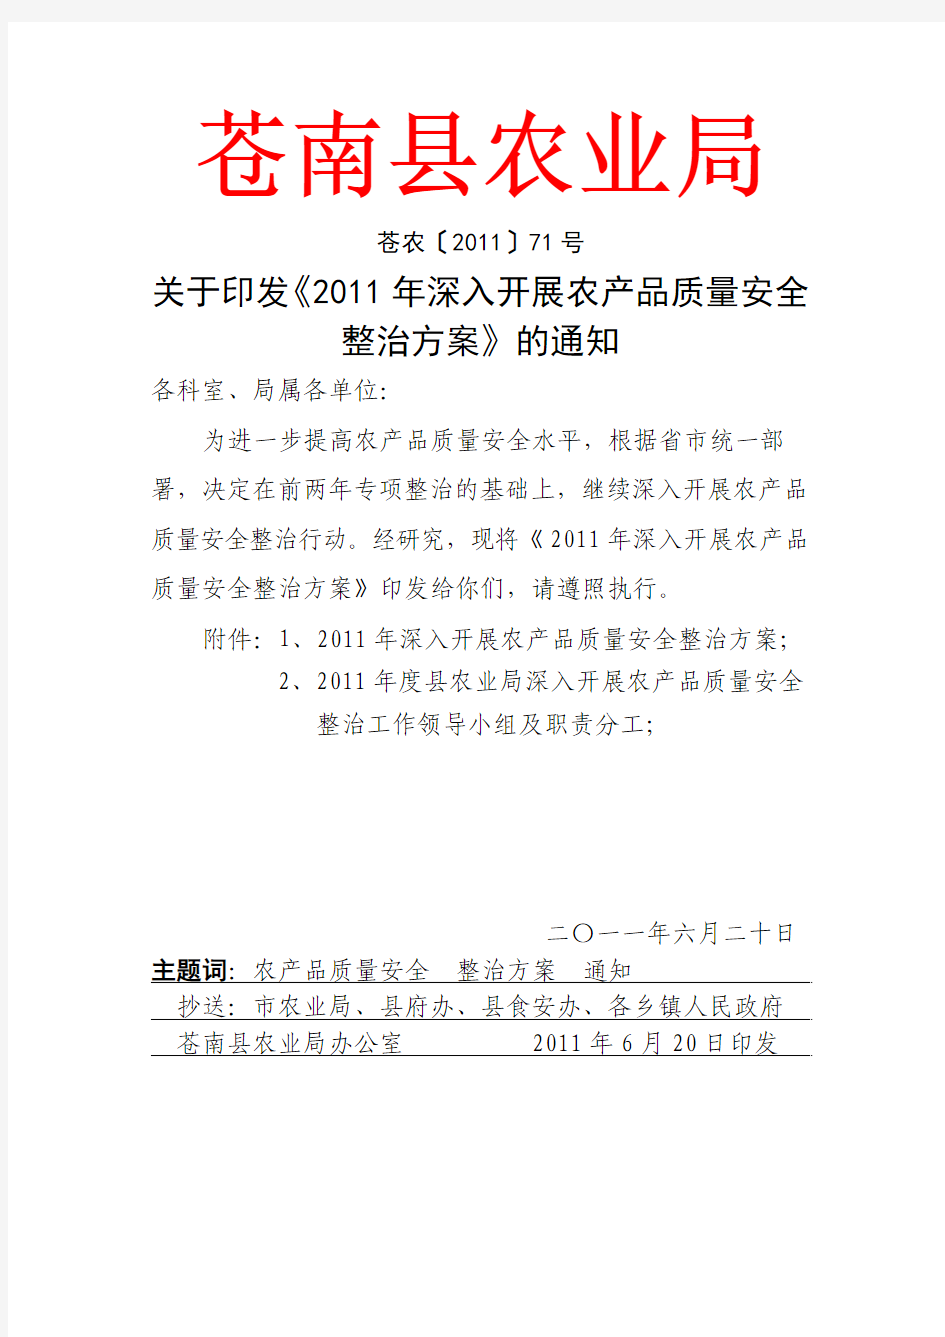 2011年苍南县农业局深入开展农产品质量安全整治方案